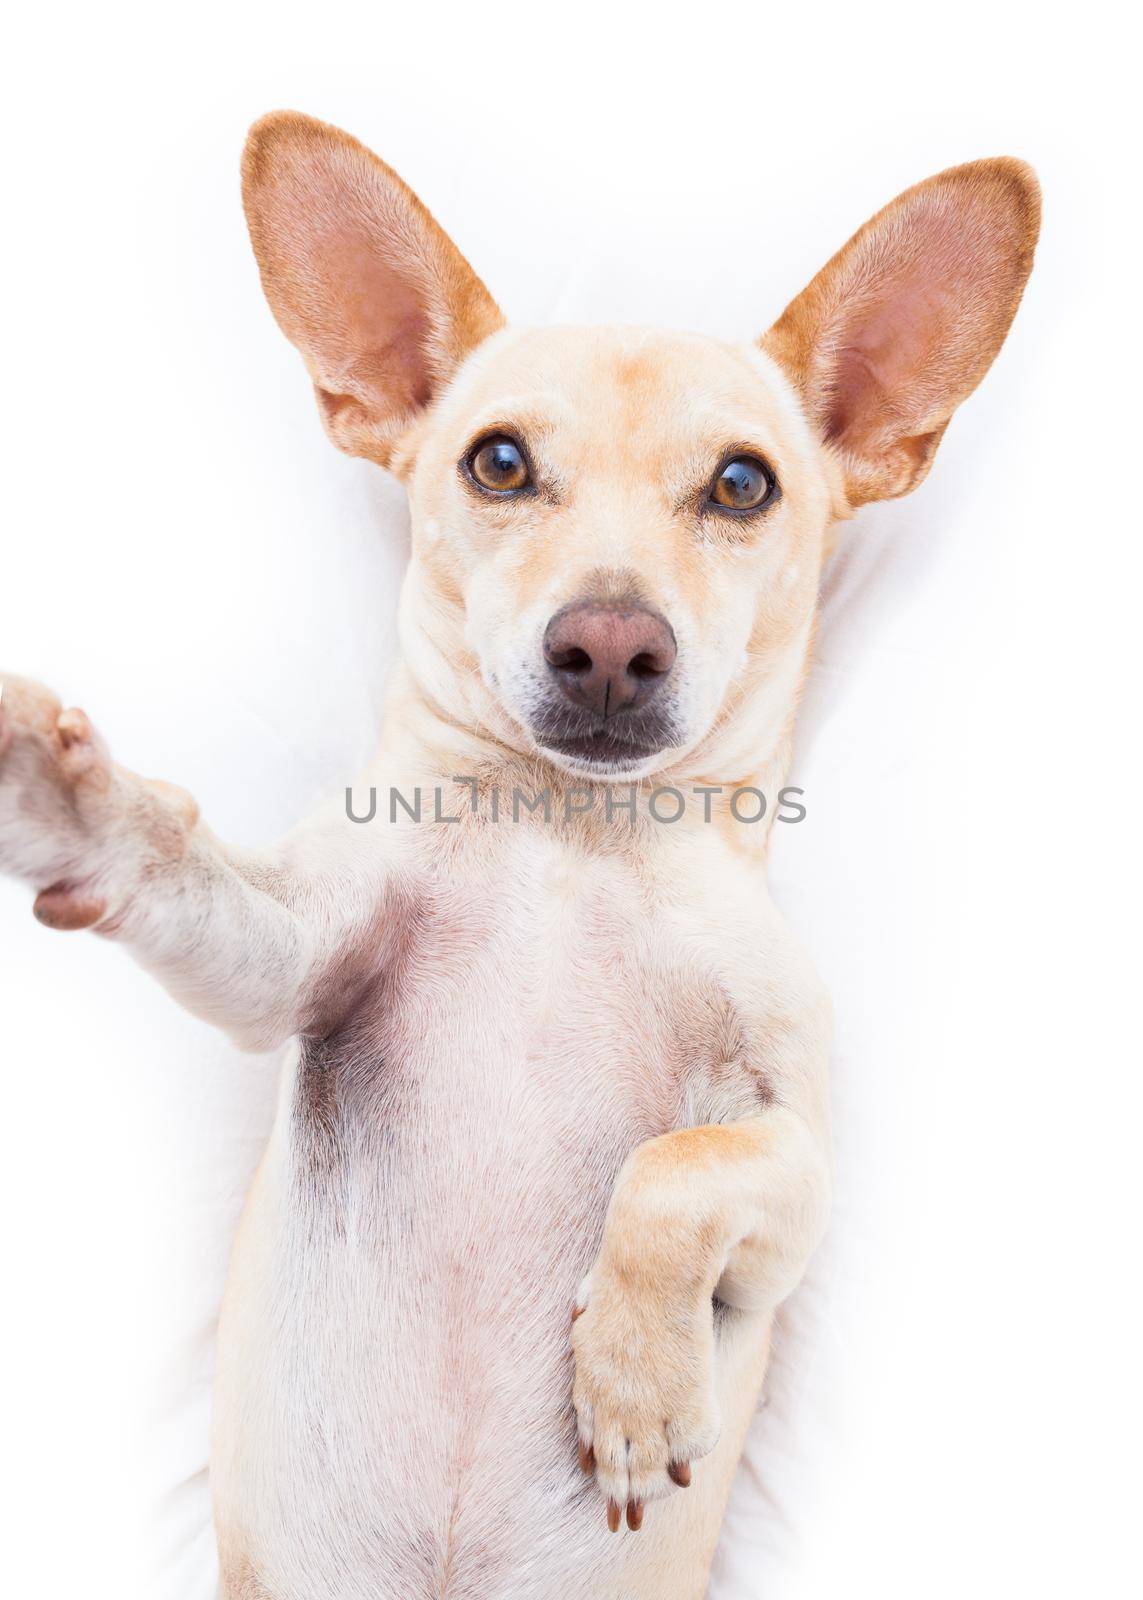 selfie dog  by Brosch